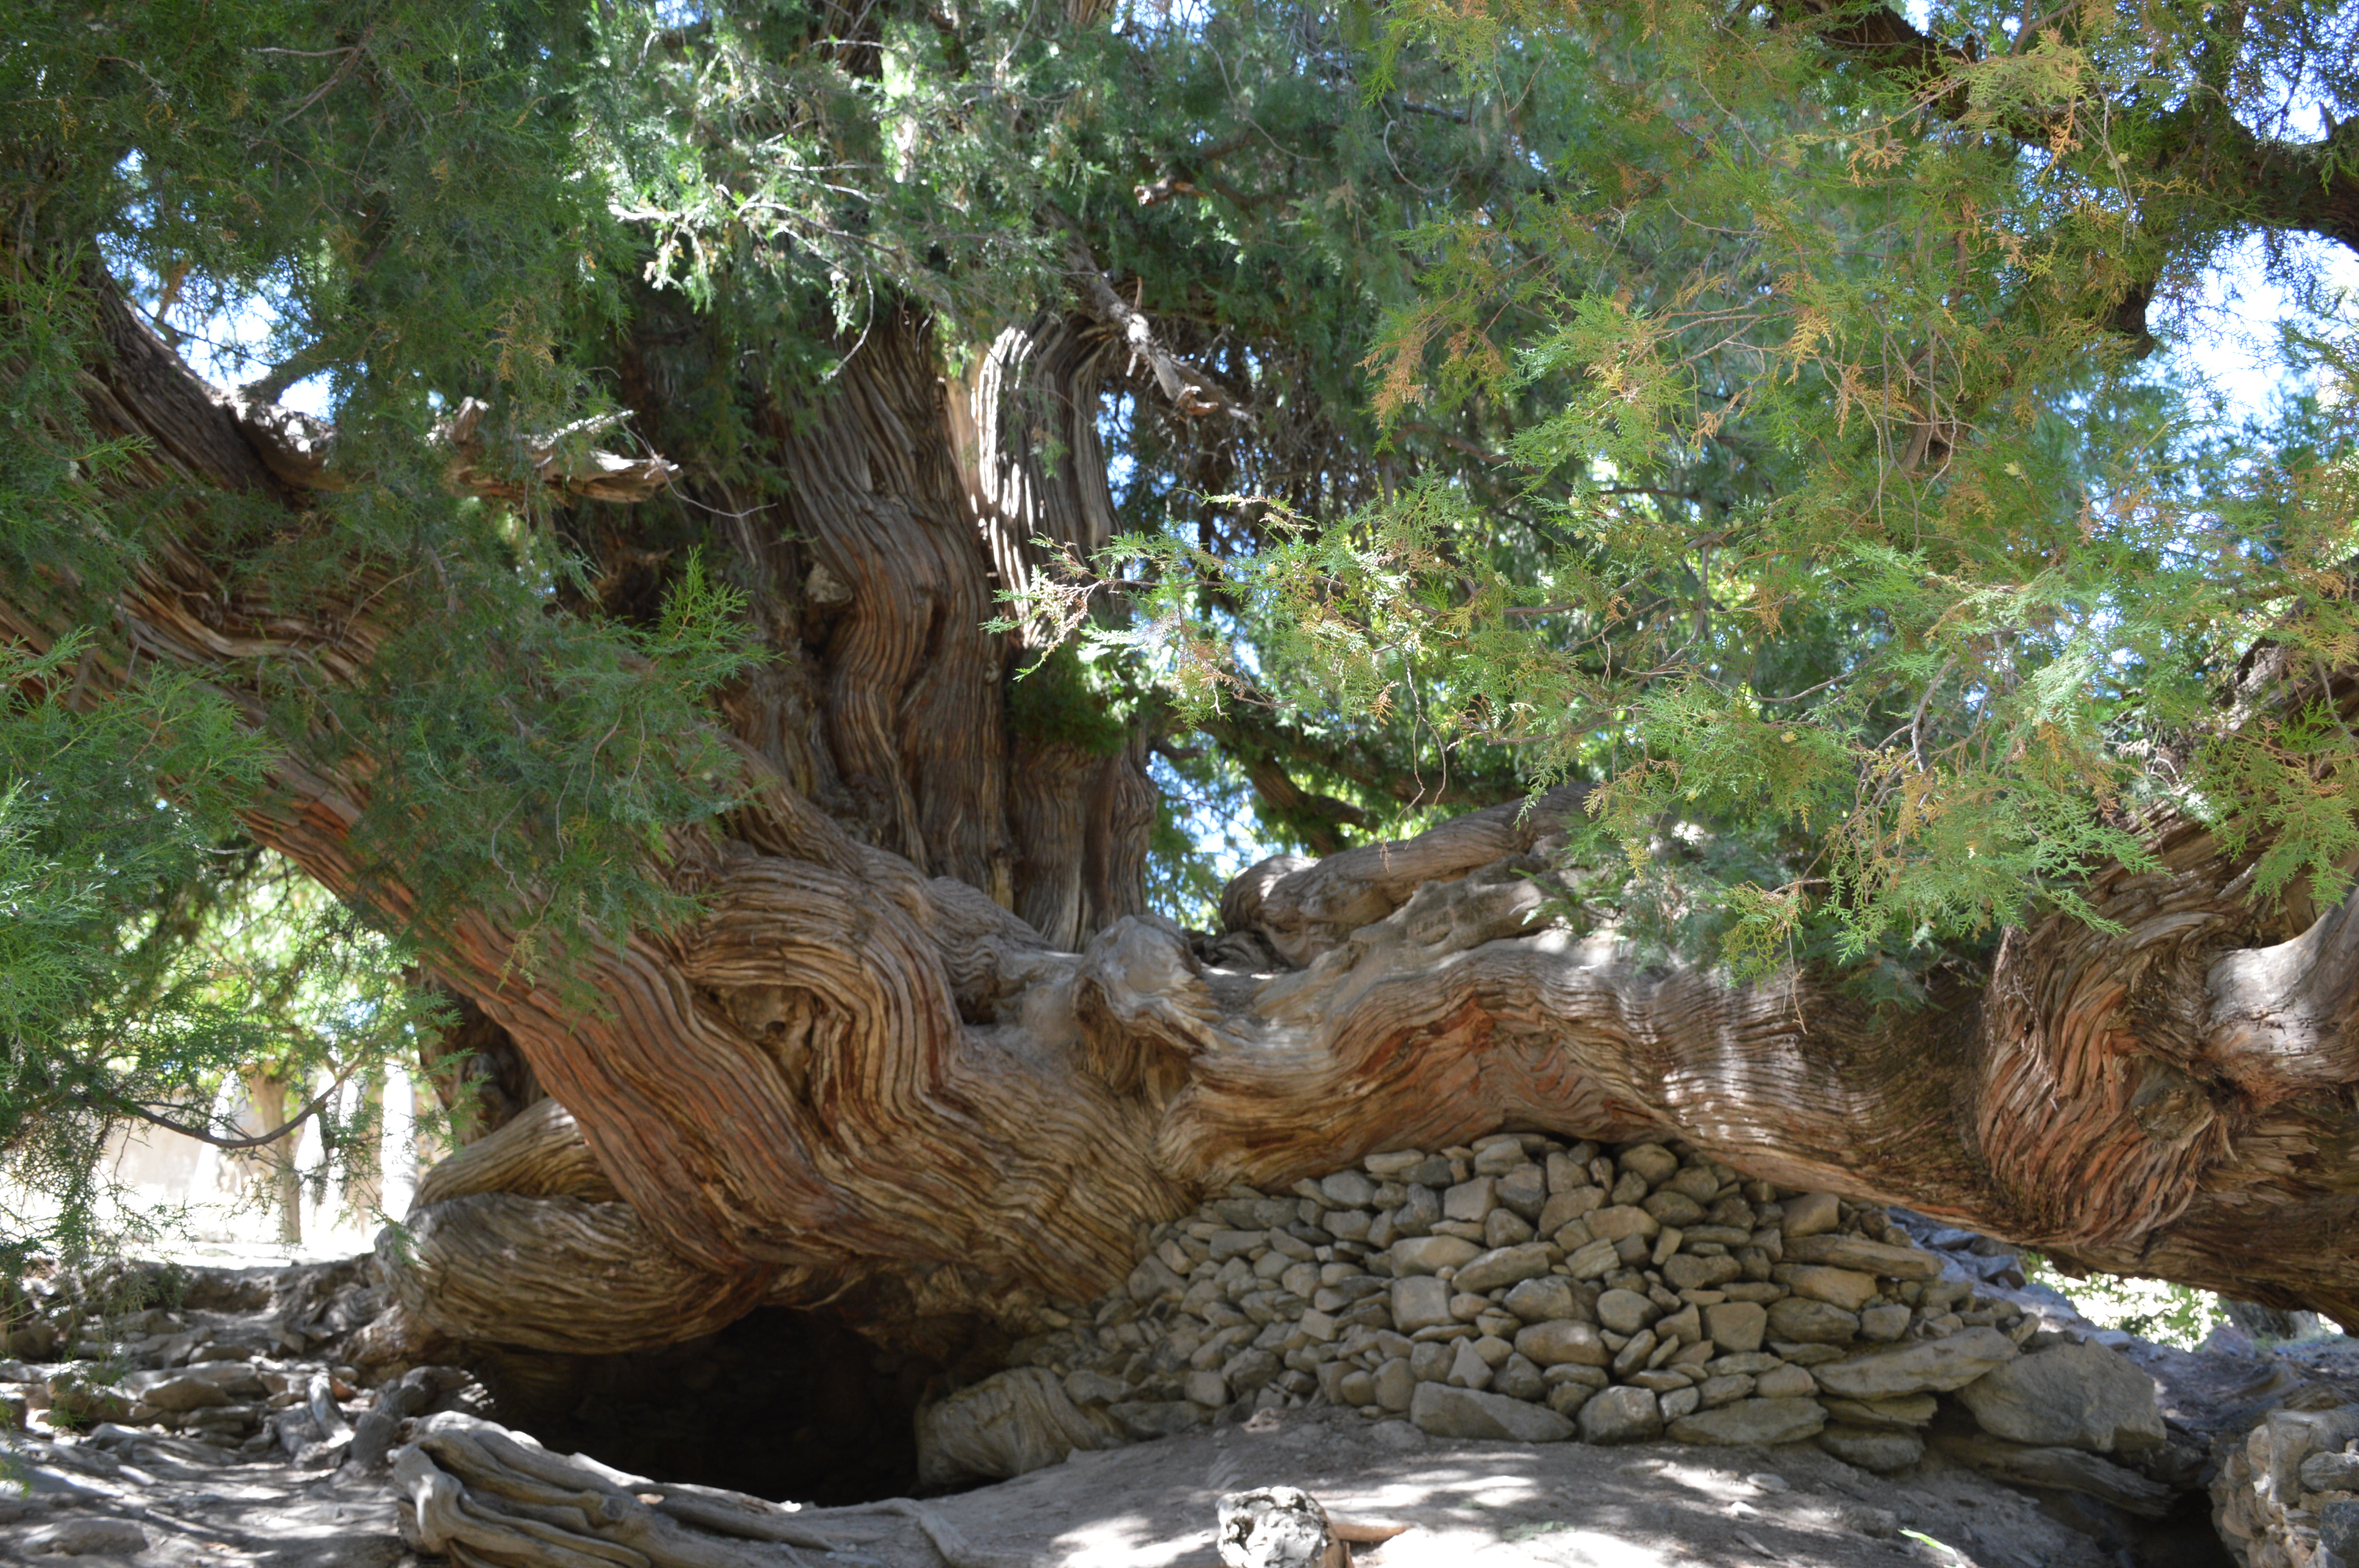 В Маджерум есть местное чудо, - дерево по возрасту такое же древнее, как Эйва из фильма Аватар.